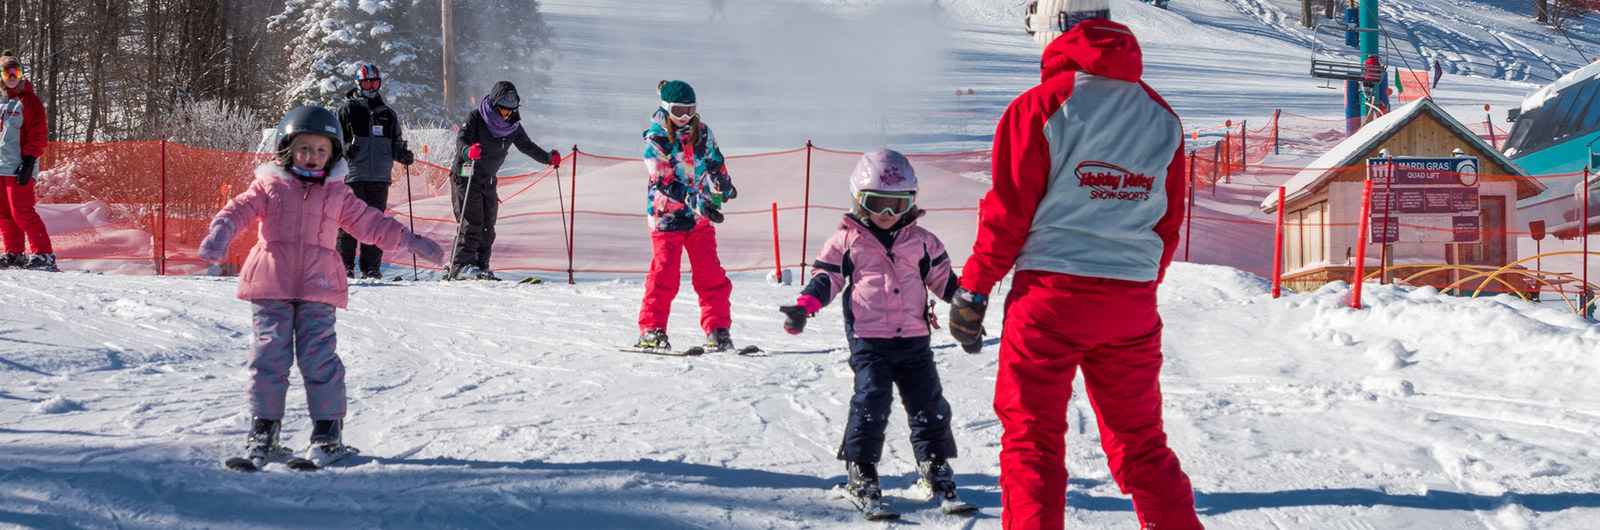 Children skiing down beginner slope during lesson